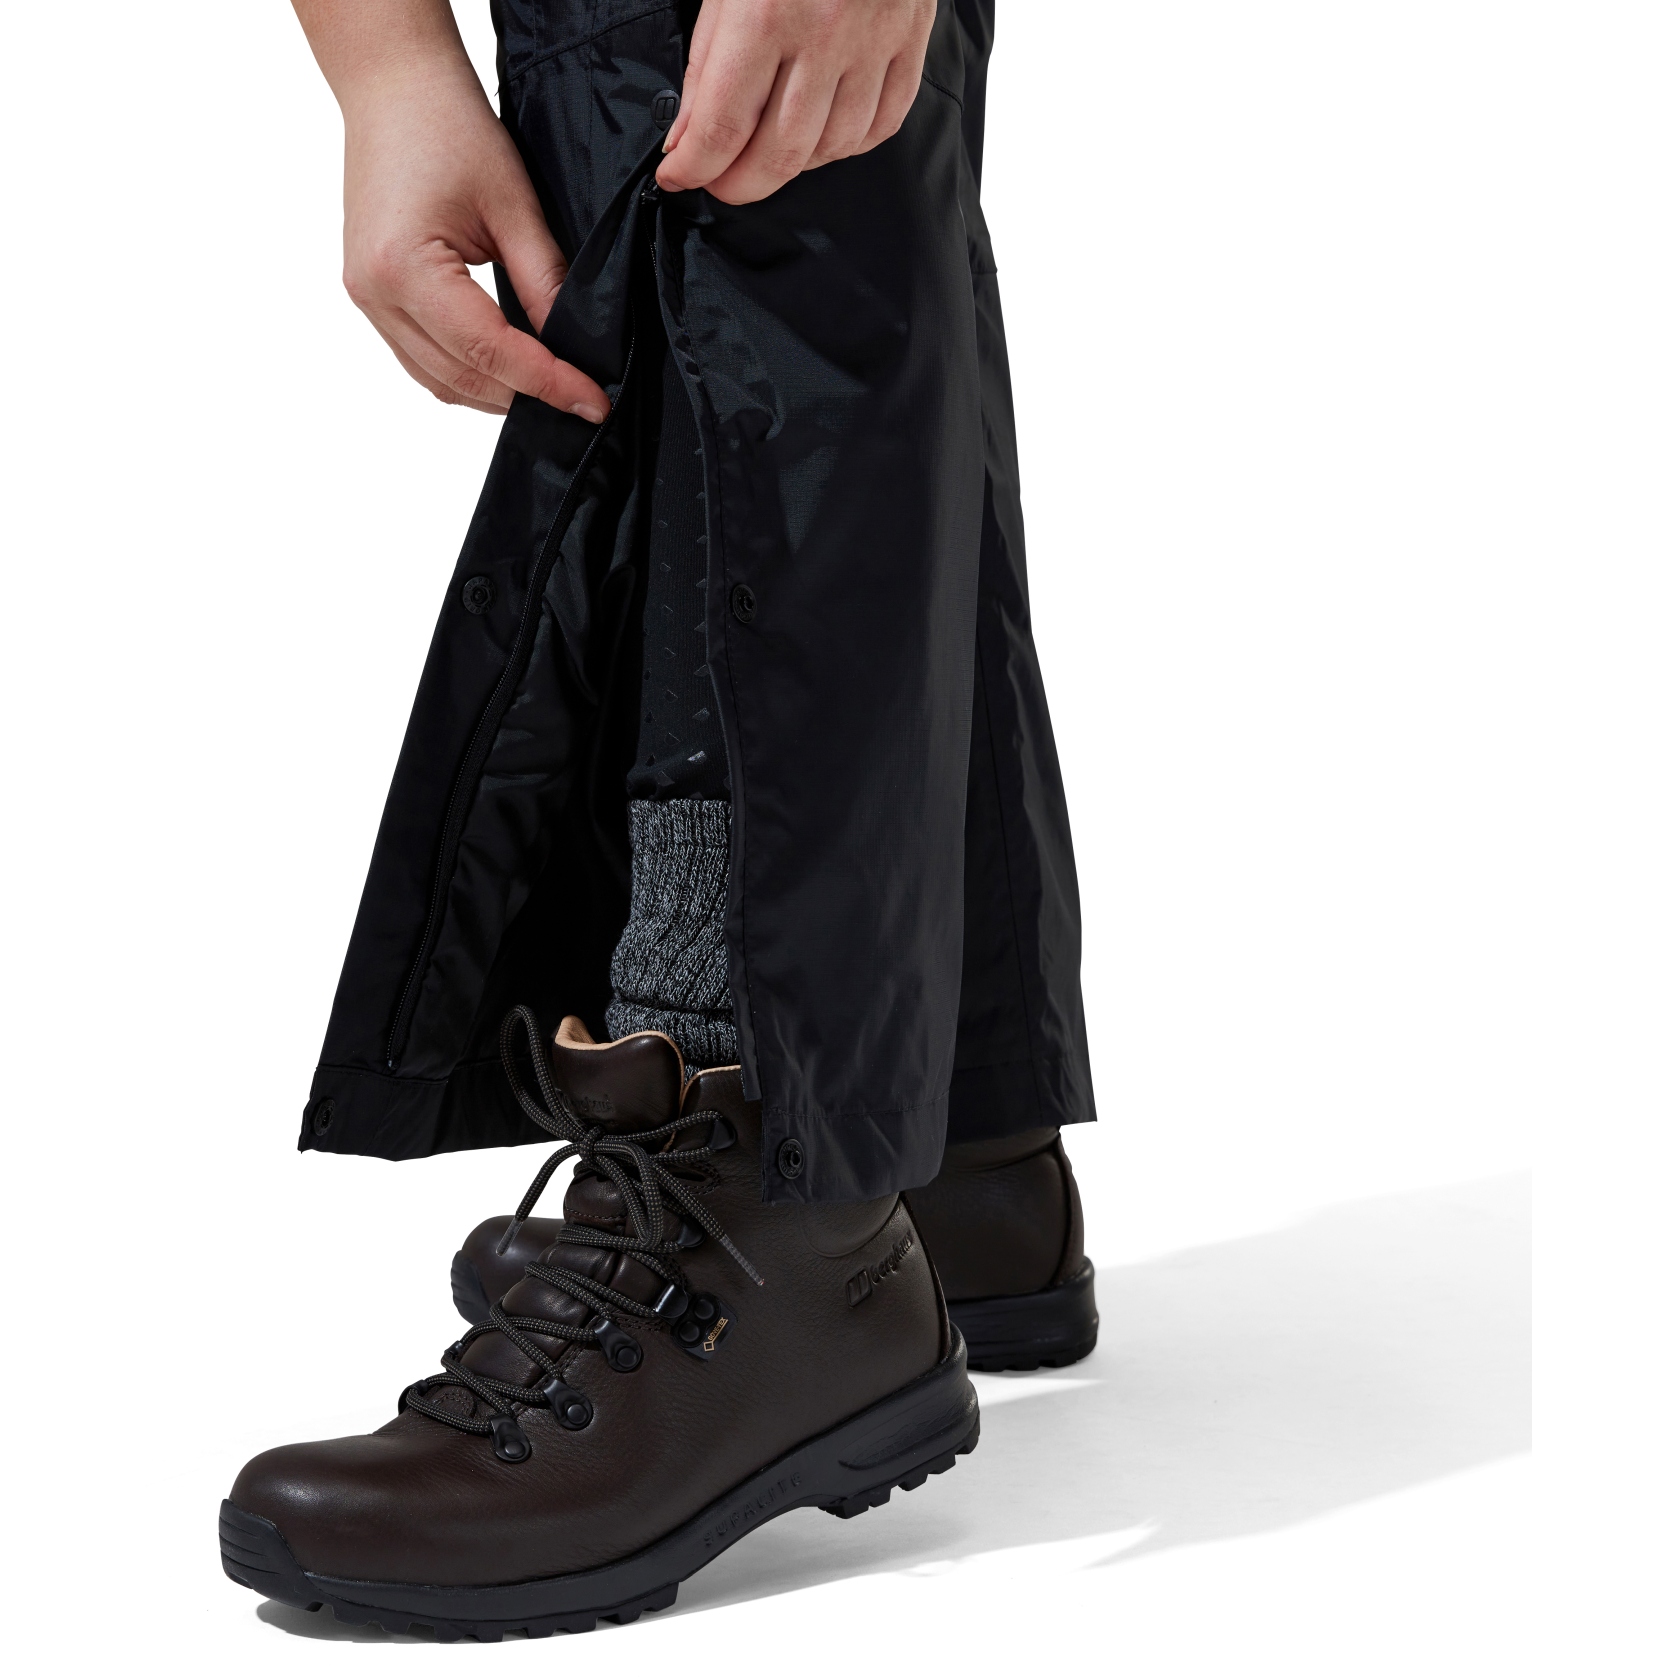 Berghaus Deluge 2.0 waterproof trousers in black